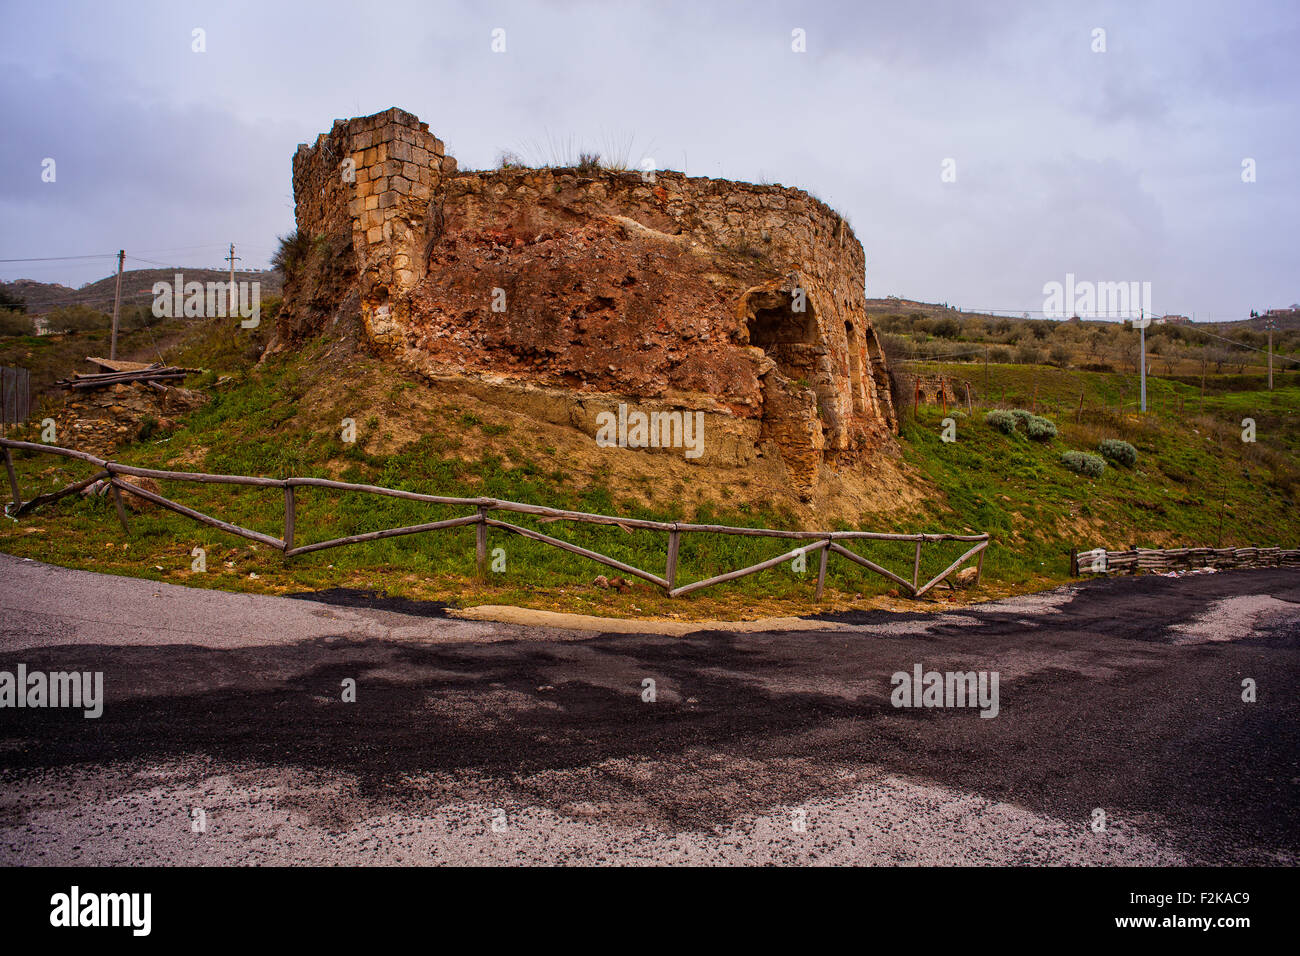 View of old ruin near Leonforte, Sicily Stock Photo